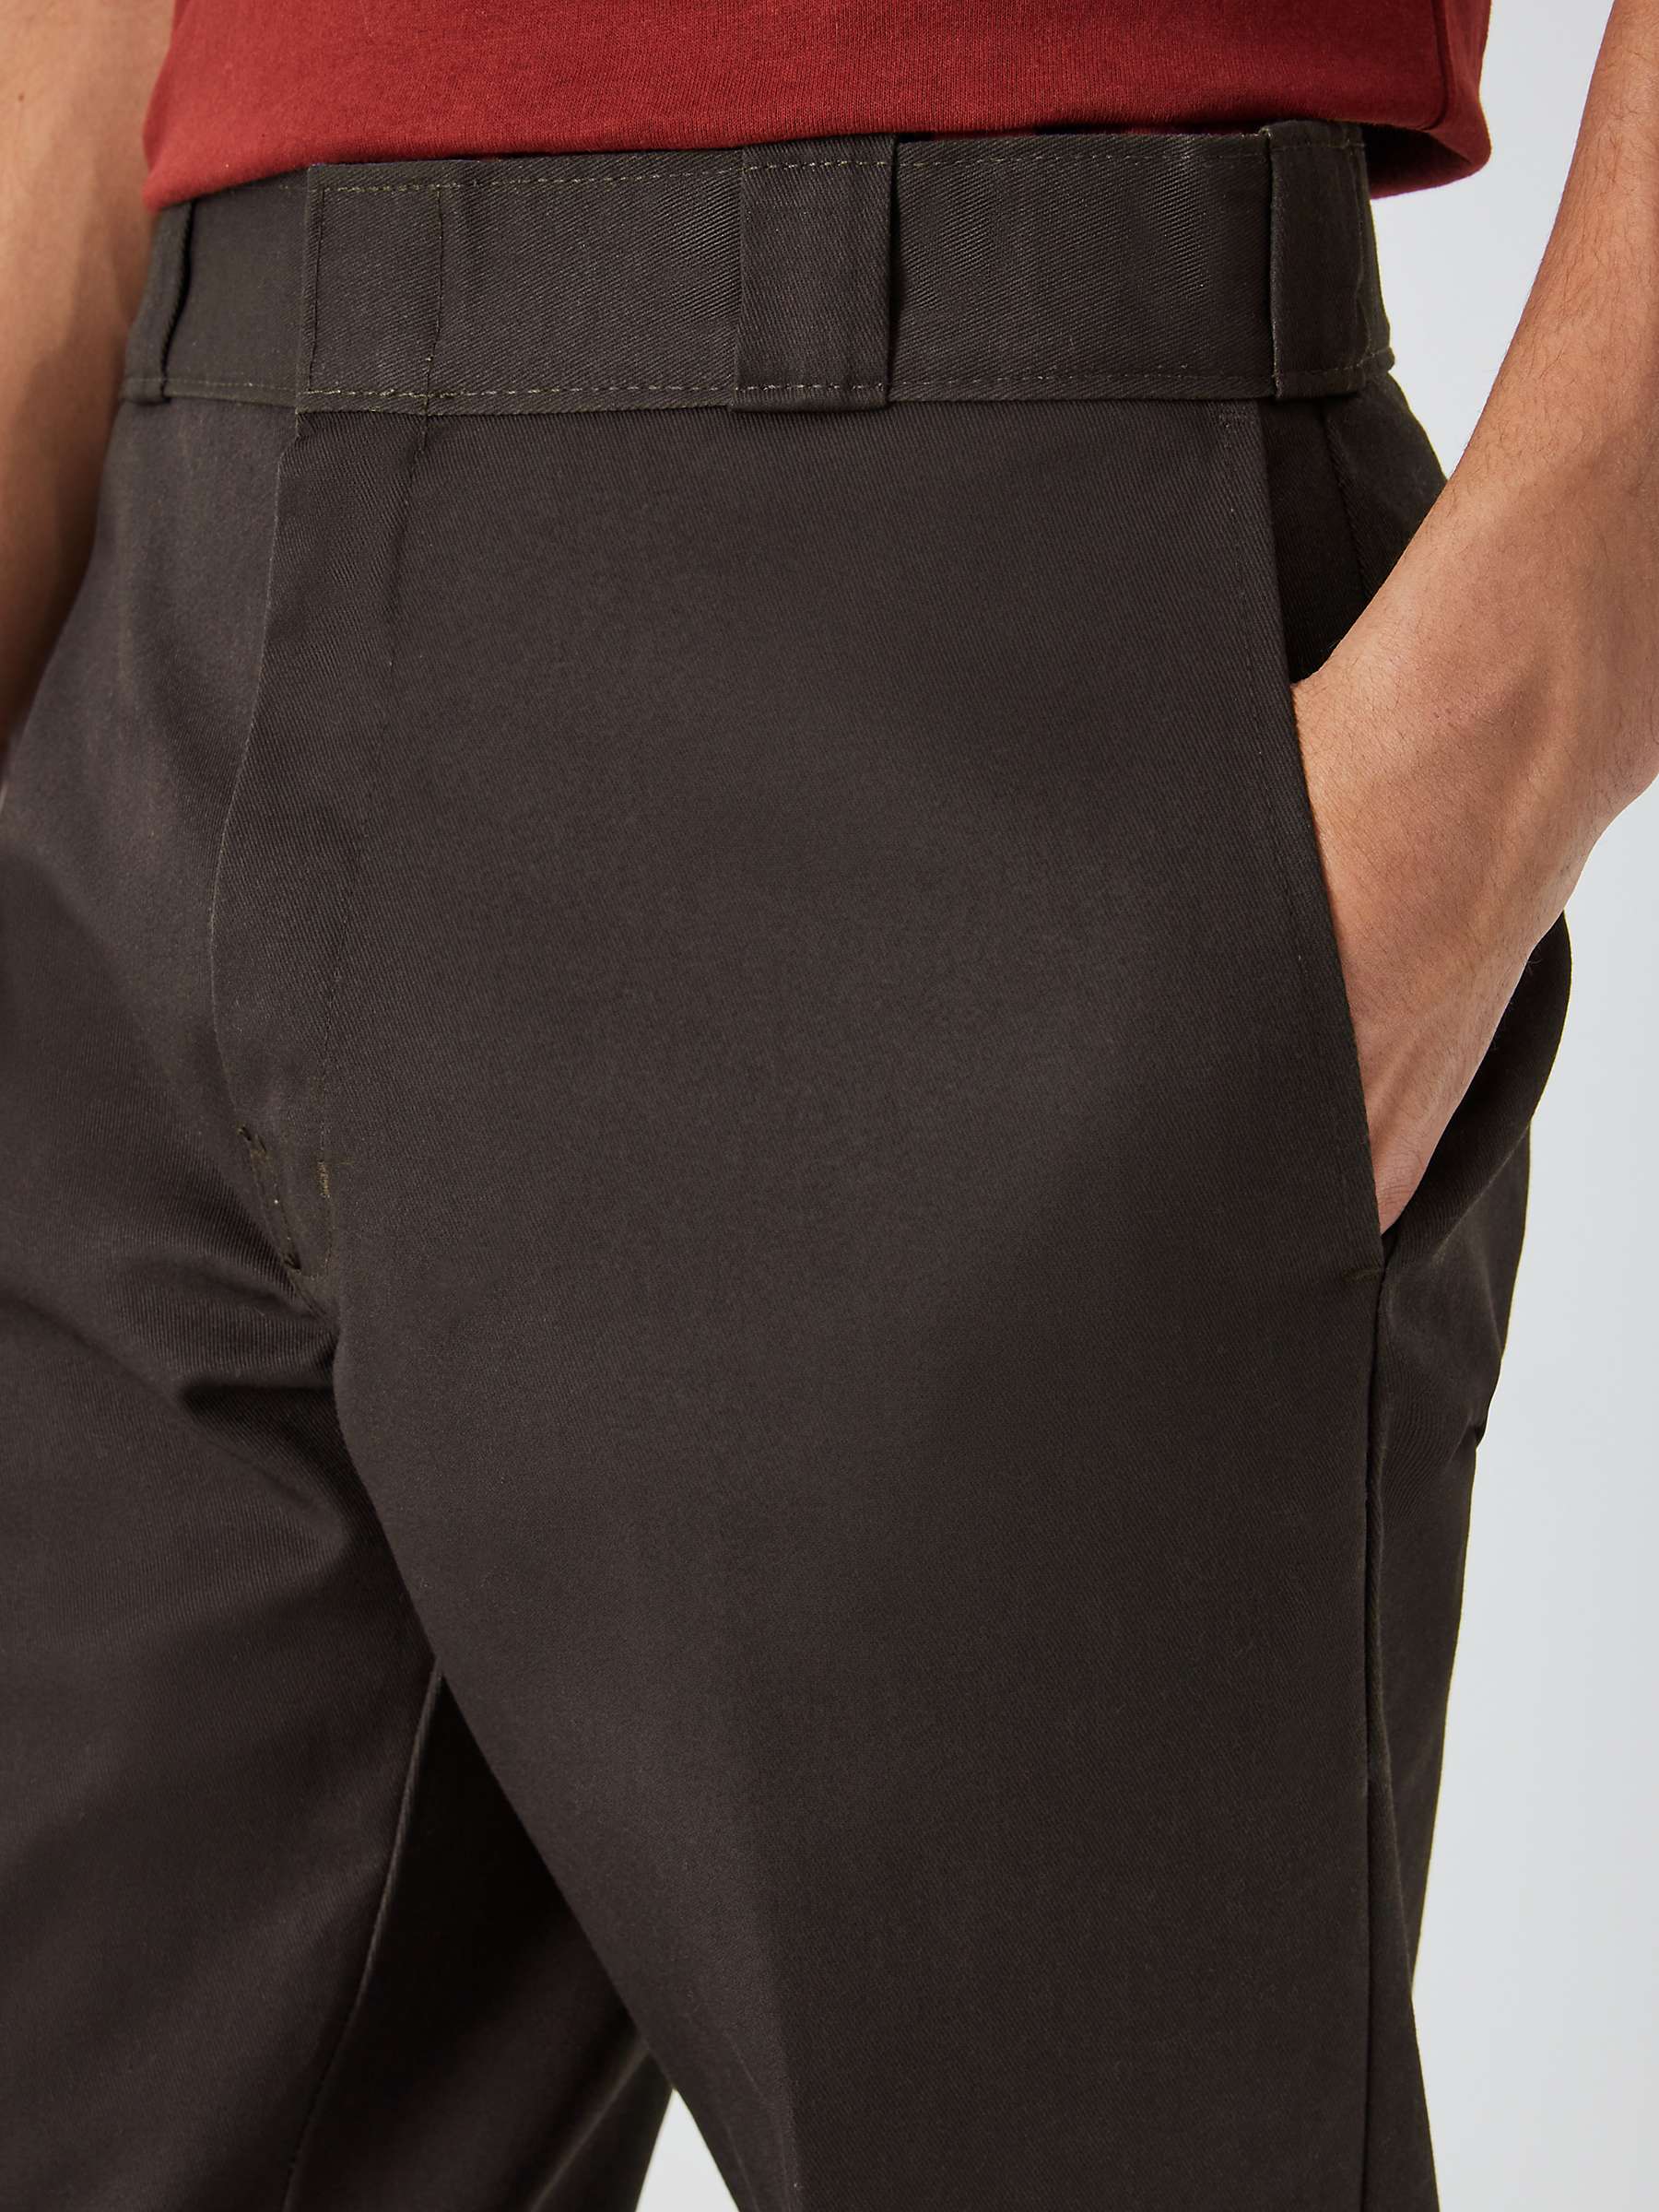 Dickies 874 Cropped Work Trousers, Dark Brown at John Lewis & Partners